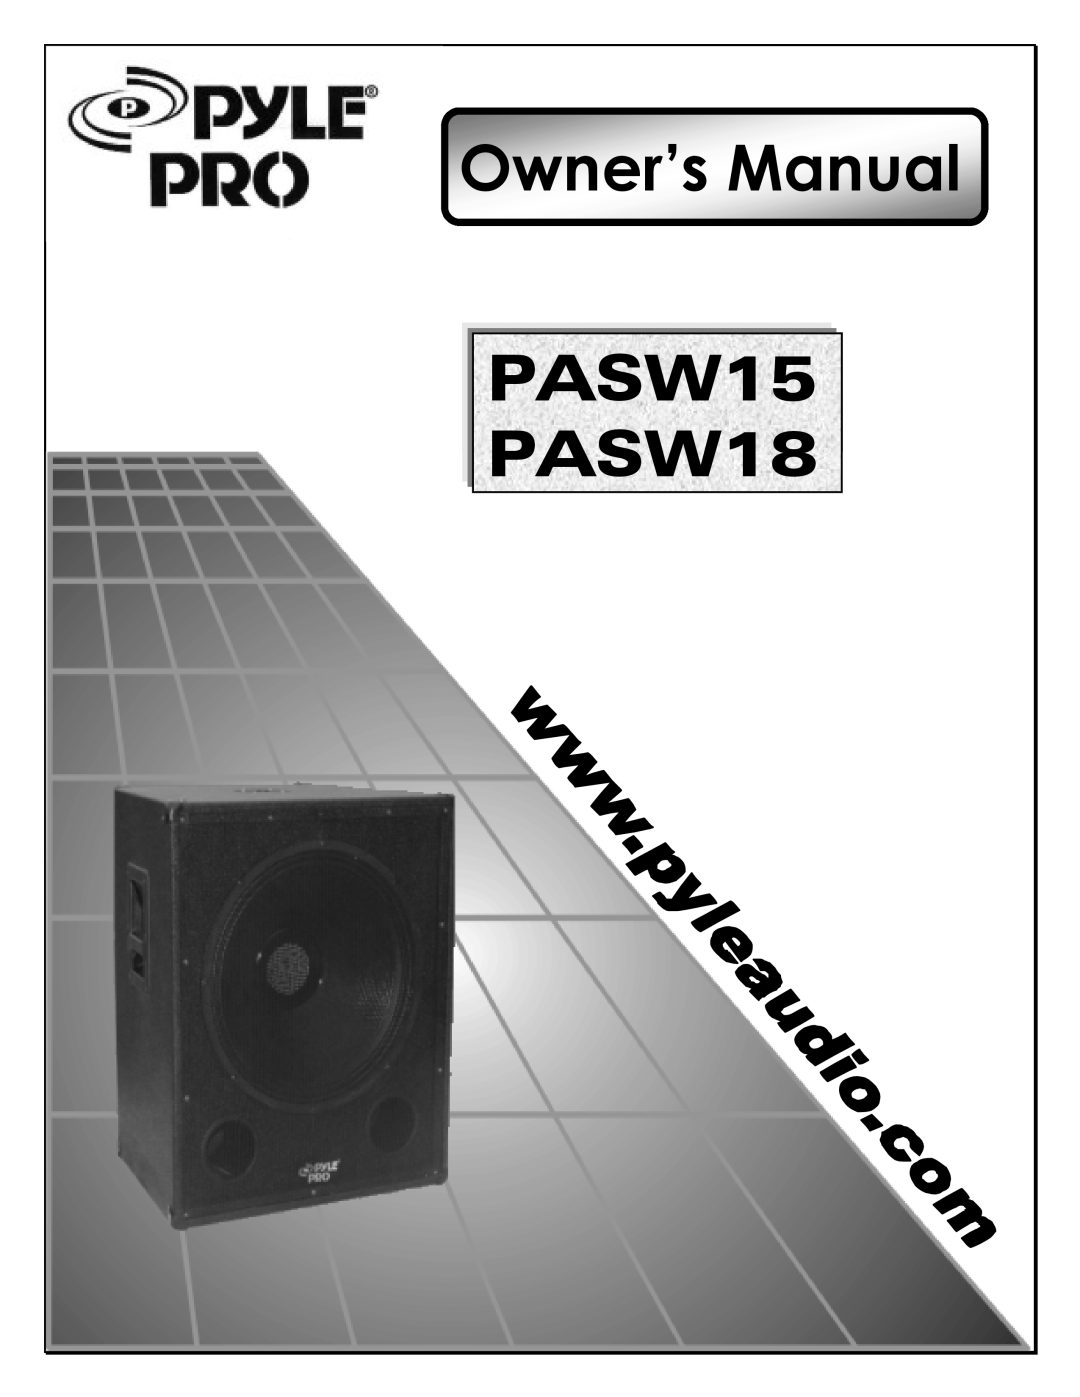 PYLE Audio PASW 15, PASW 18 manual 